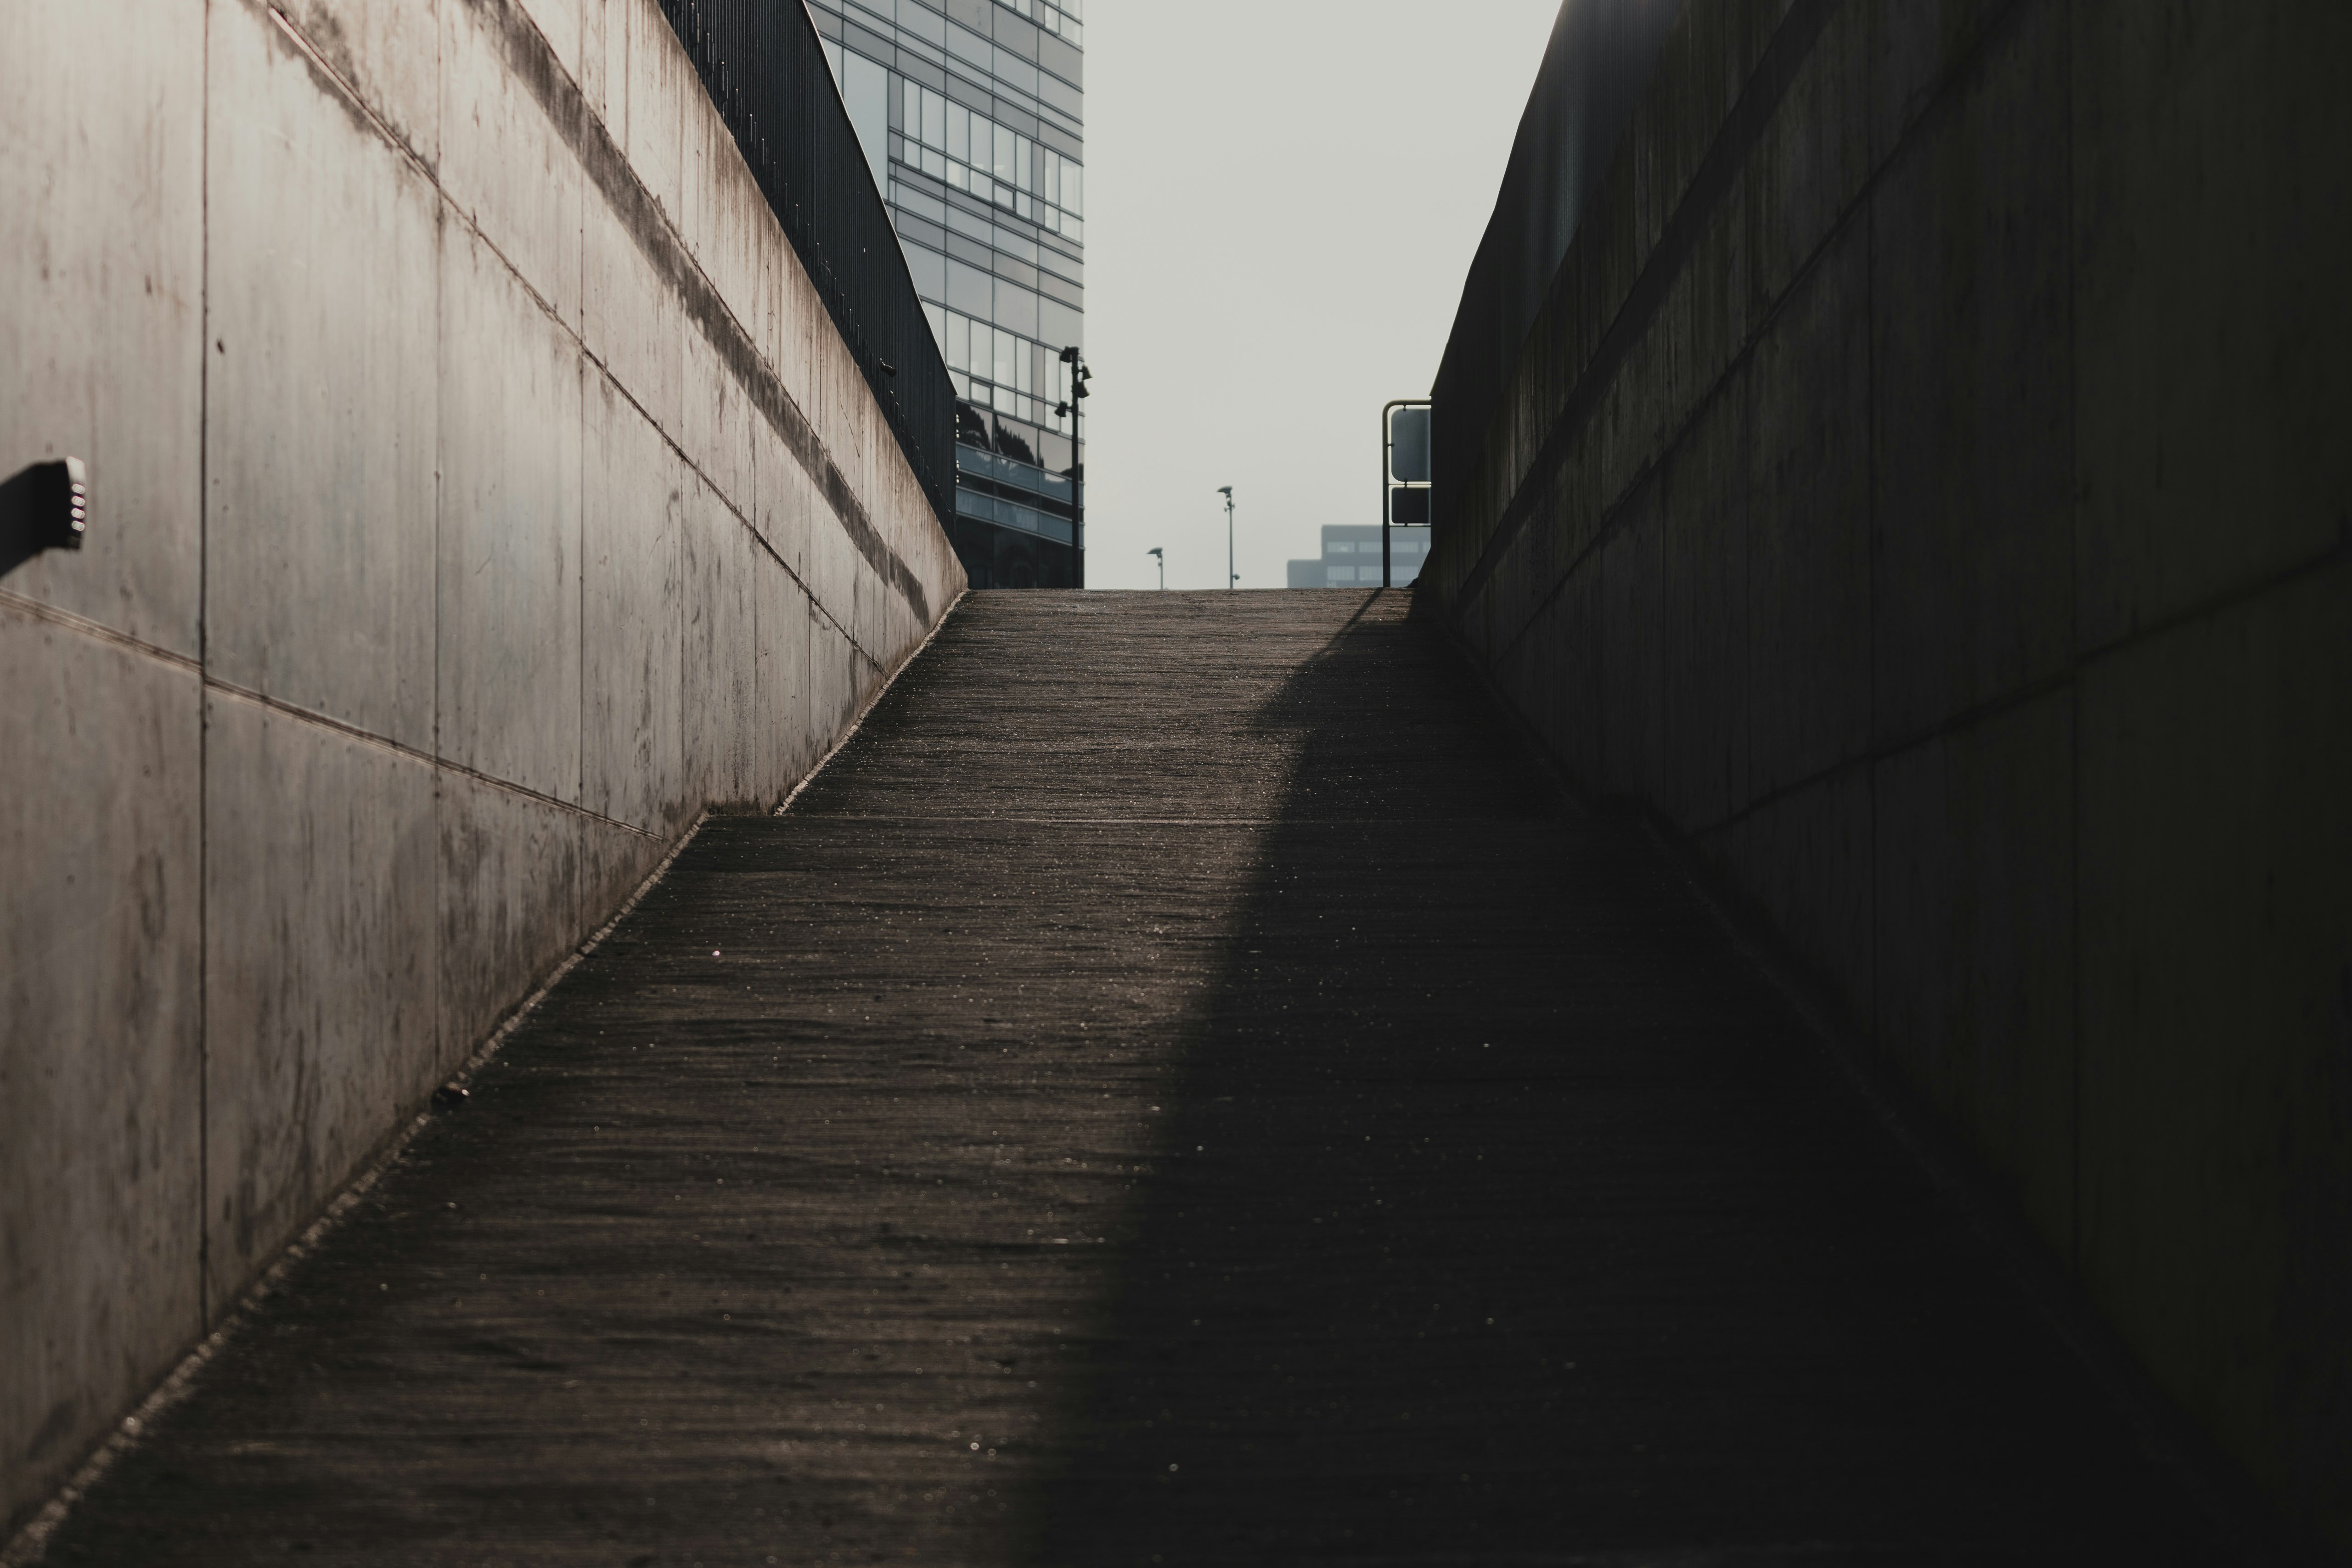 brown wooden pathway between concrete walls